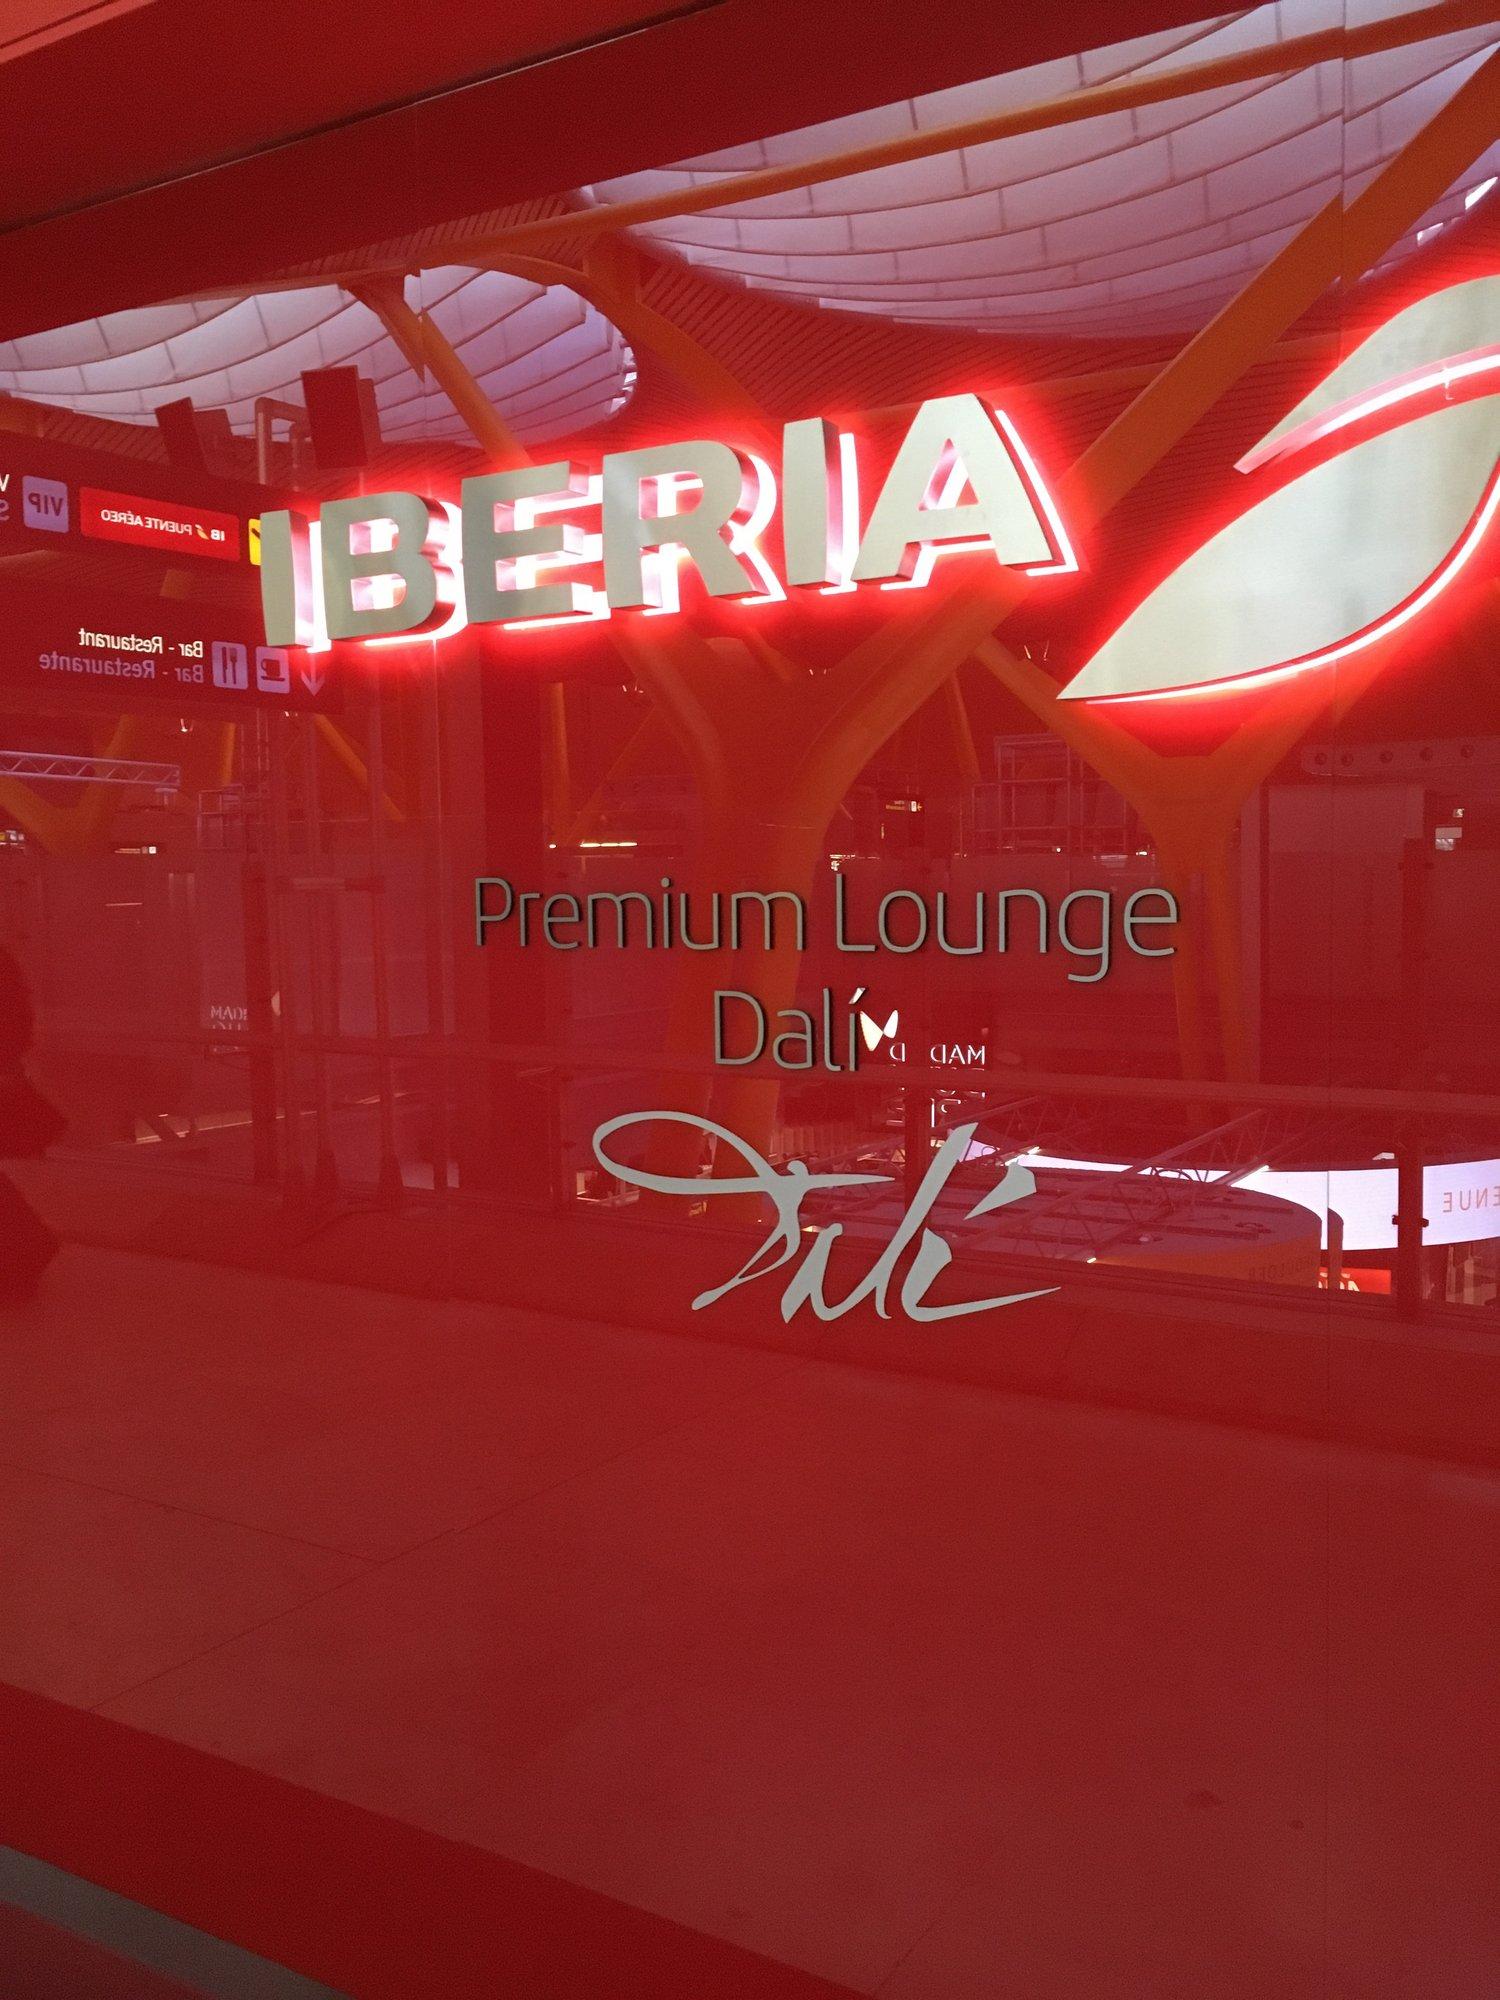 Iberia Dali Lounge image 14 of 27